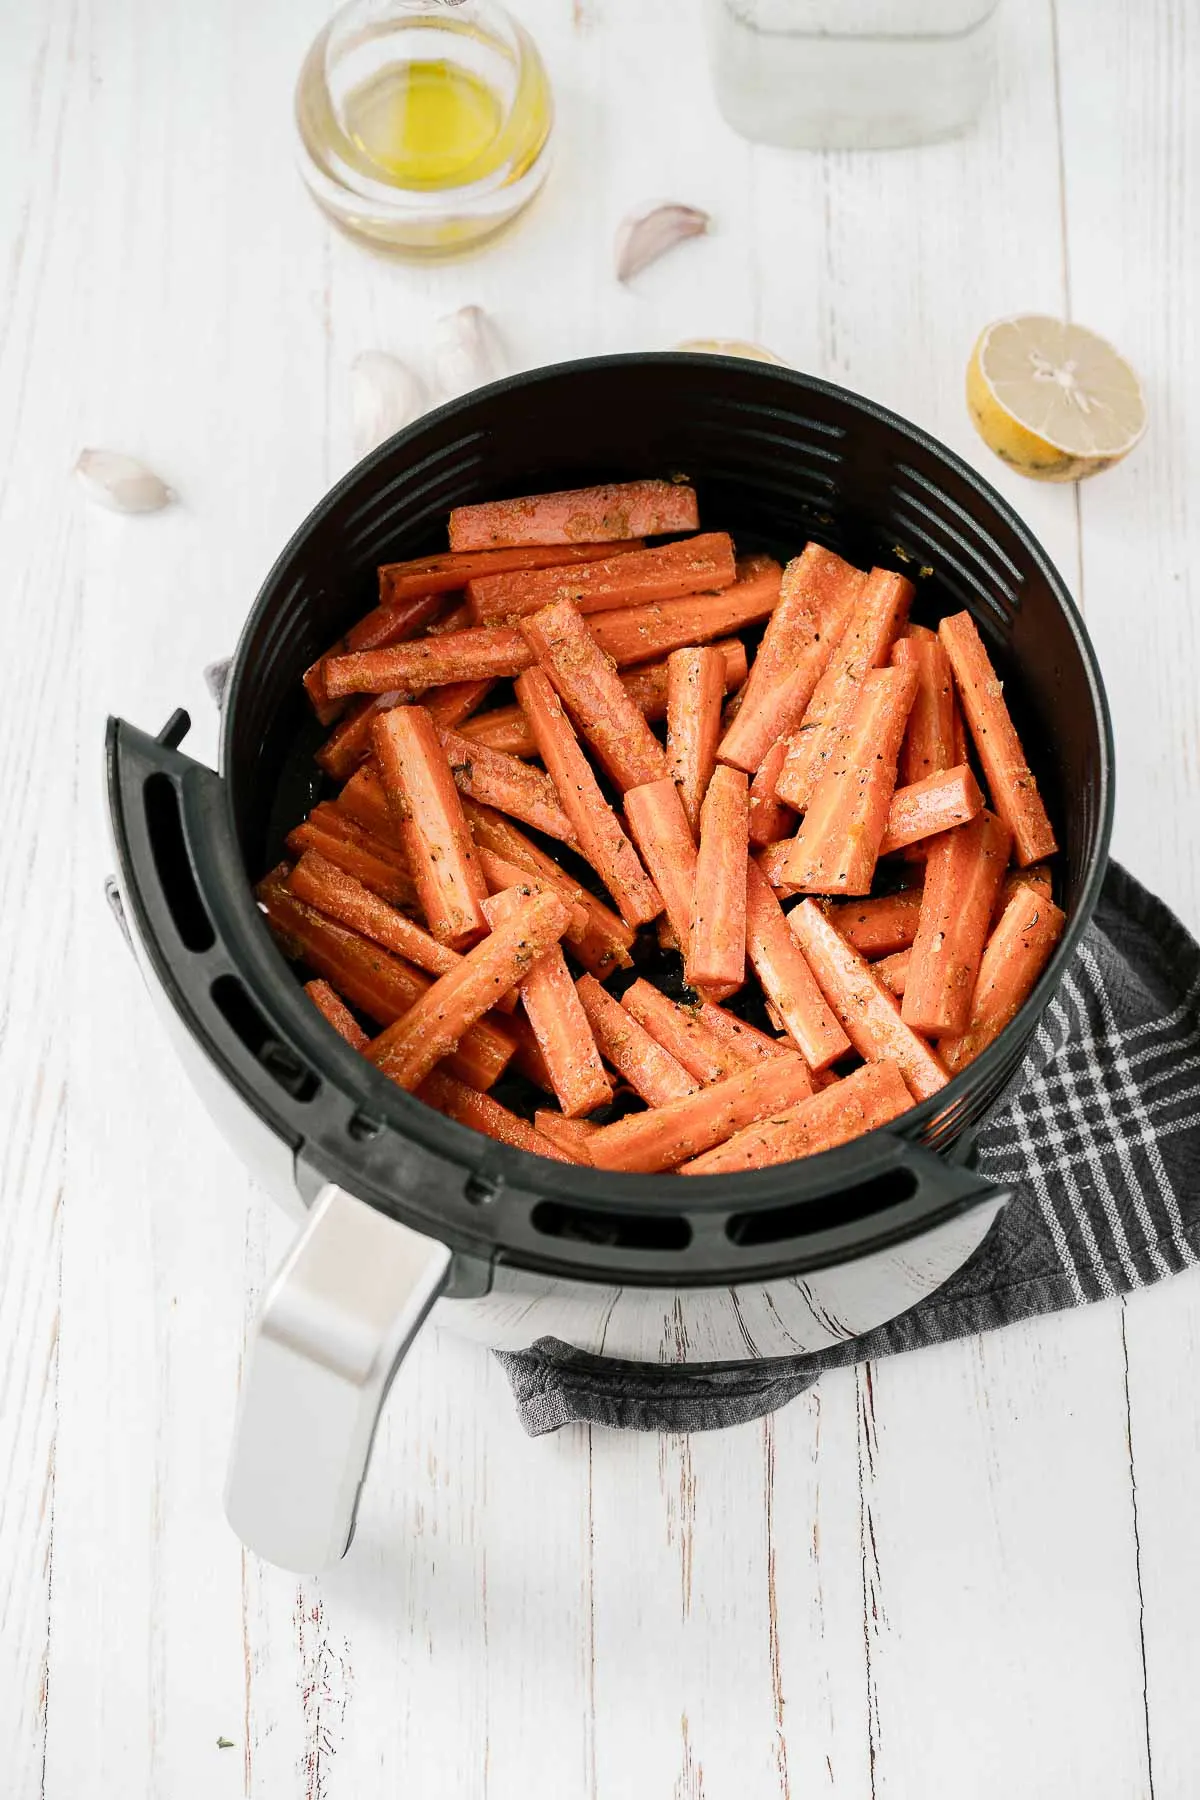 Carrots in an air fryer.